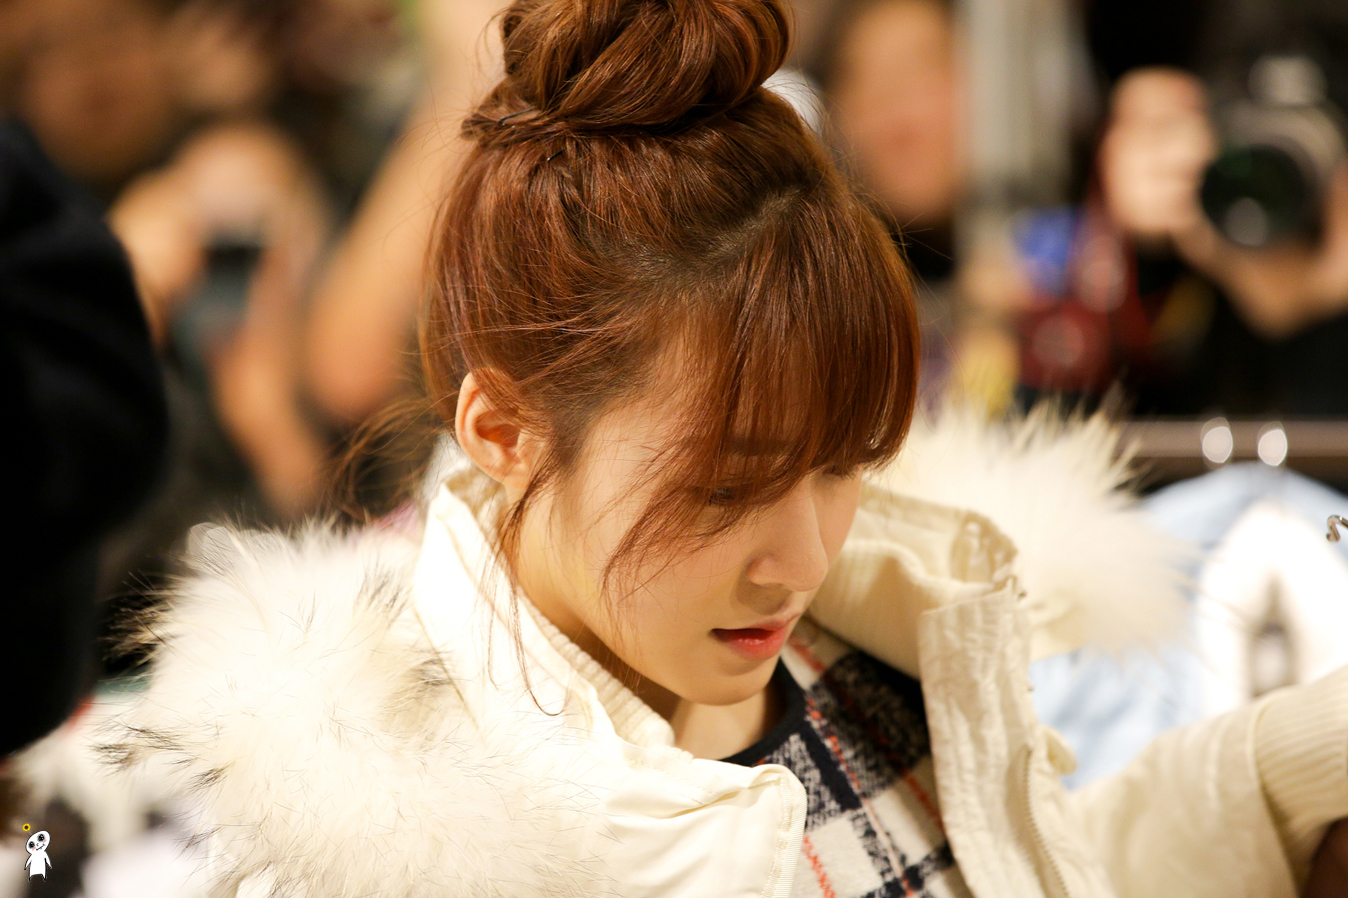 [PIC][28-11-2013]Tiffany ghé thăm cửa hàng "QUA" ở Hyundai Department Store vào trưa nay - Page 3 2519364252980C8D107395